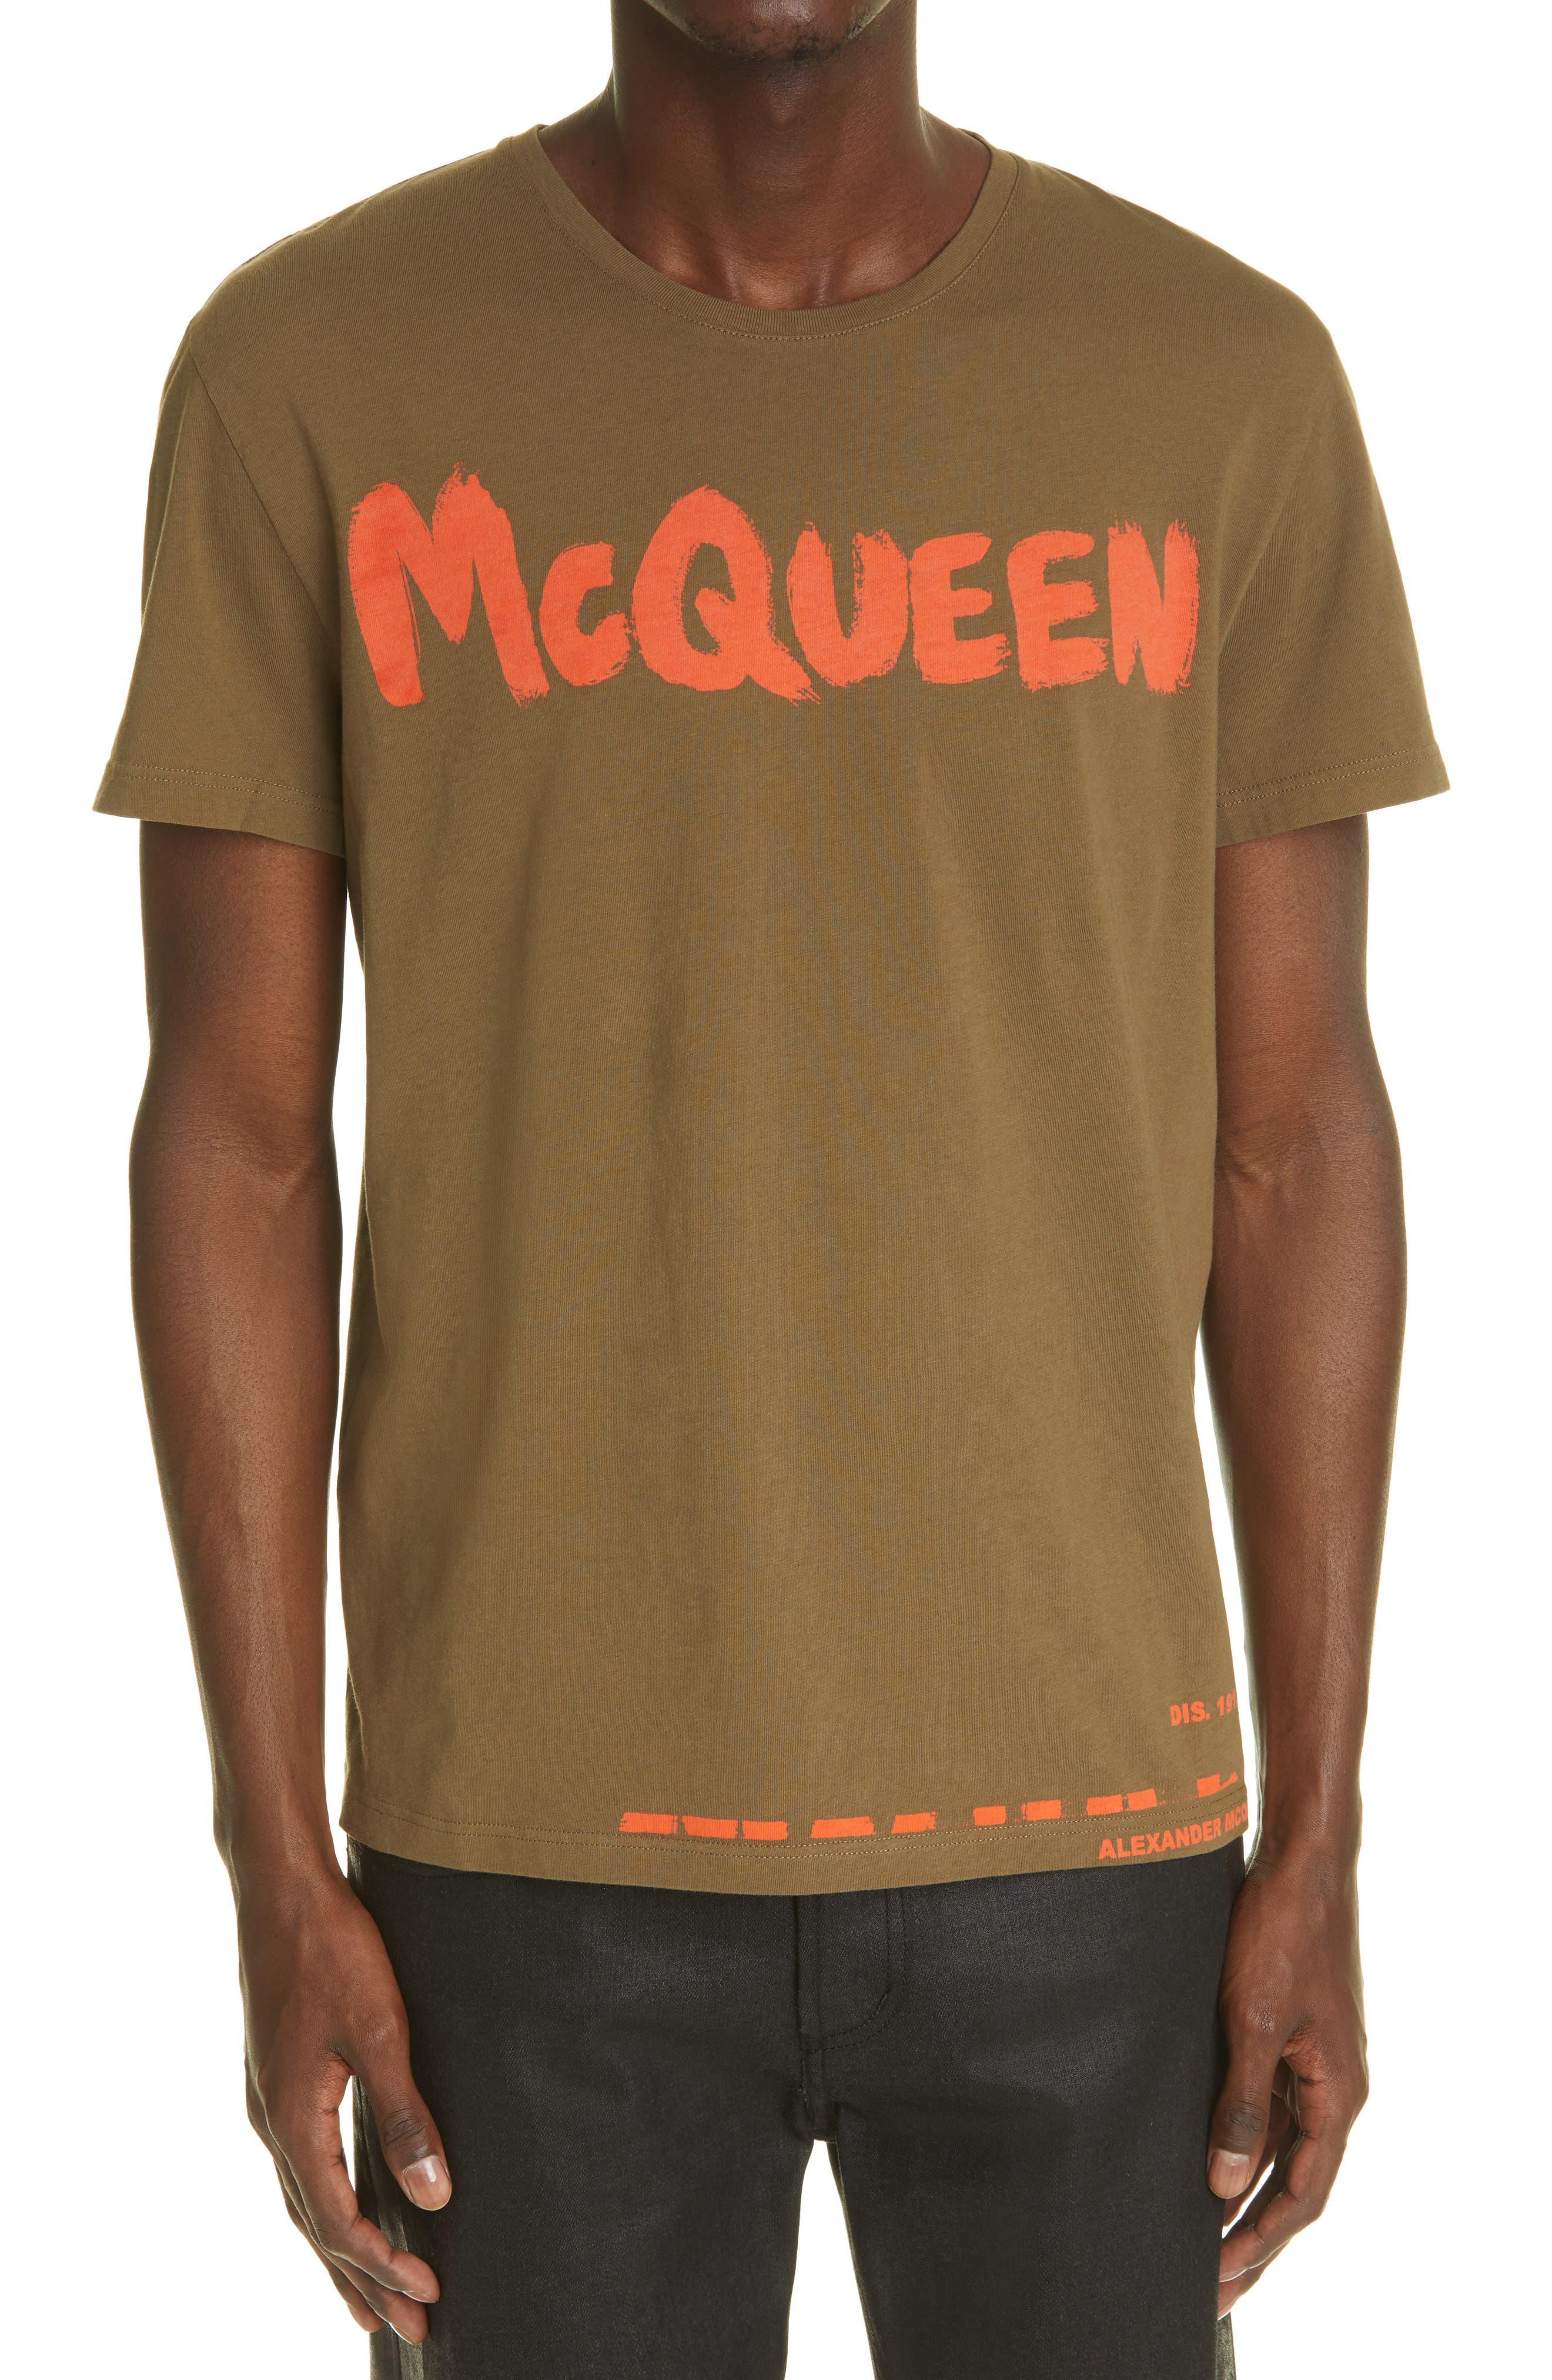 Alexander Mcqueen T Shirt Men Outlet, 60% OFF | www.ingeniovirtual.com